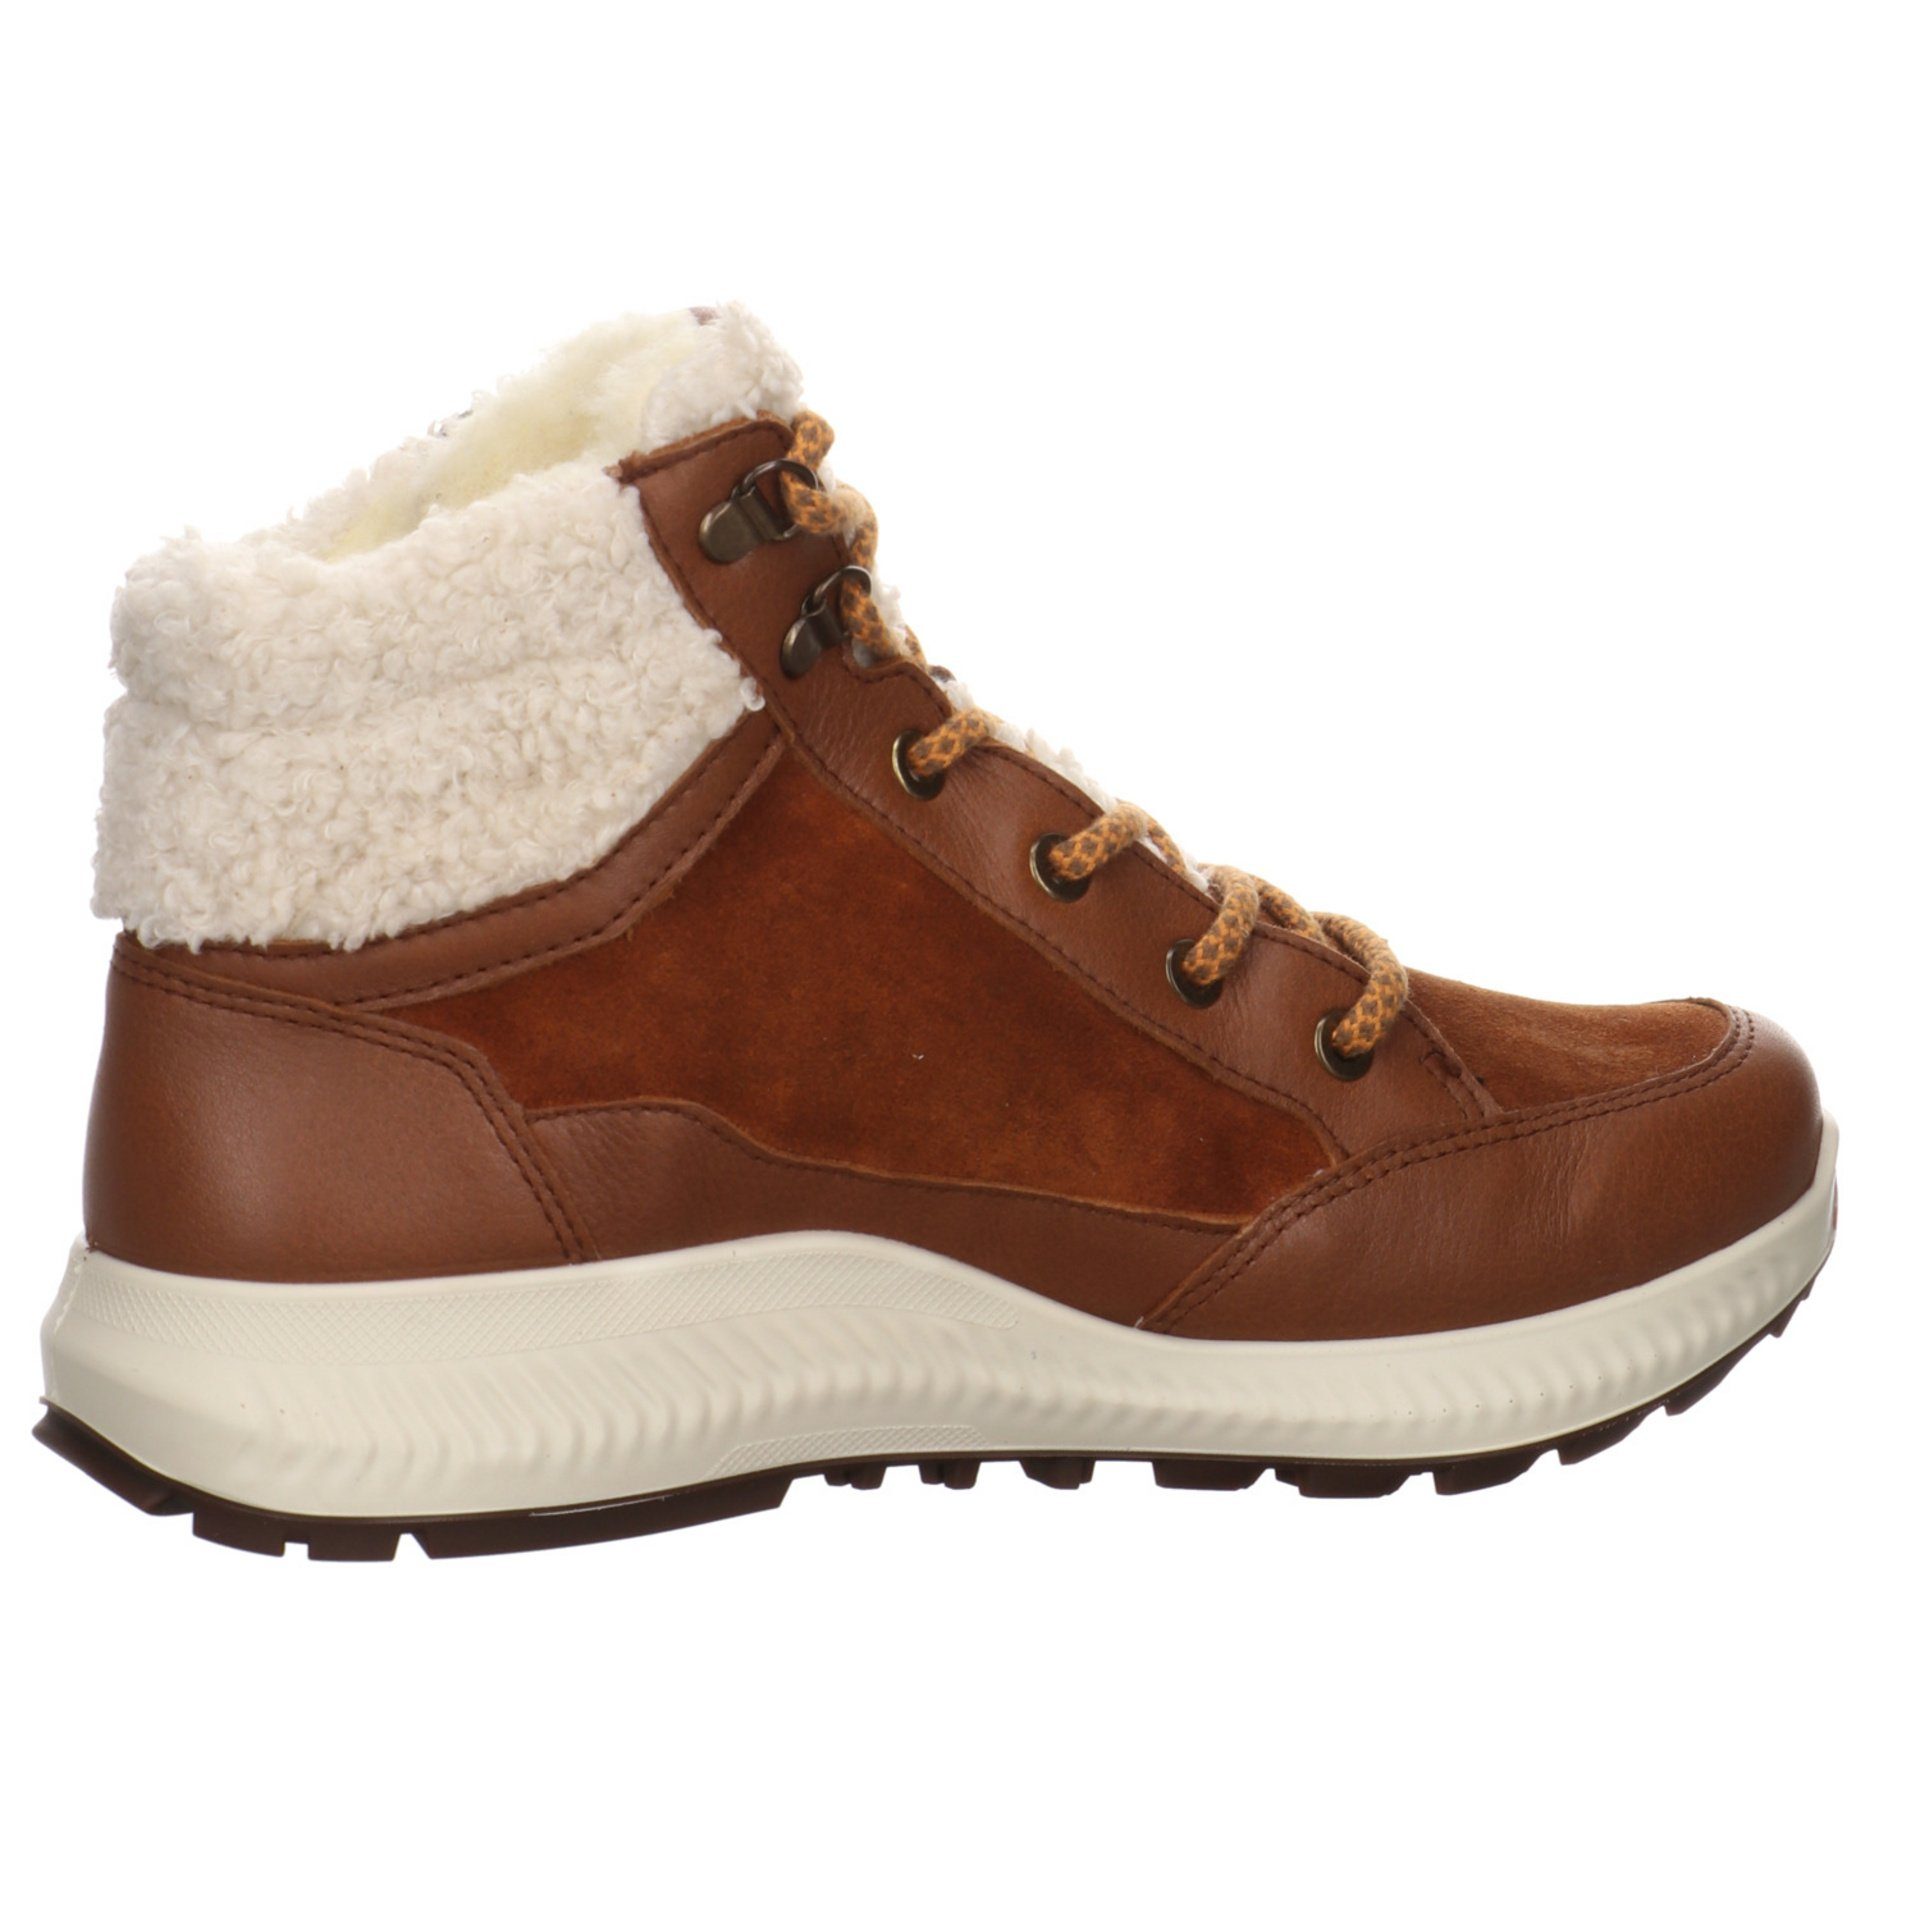 Elegant Schuhe Ara Stiefelette Damen Boots Stiefel Freizeit Leder-/Textilkombination braun Hiker 046745